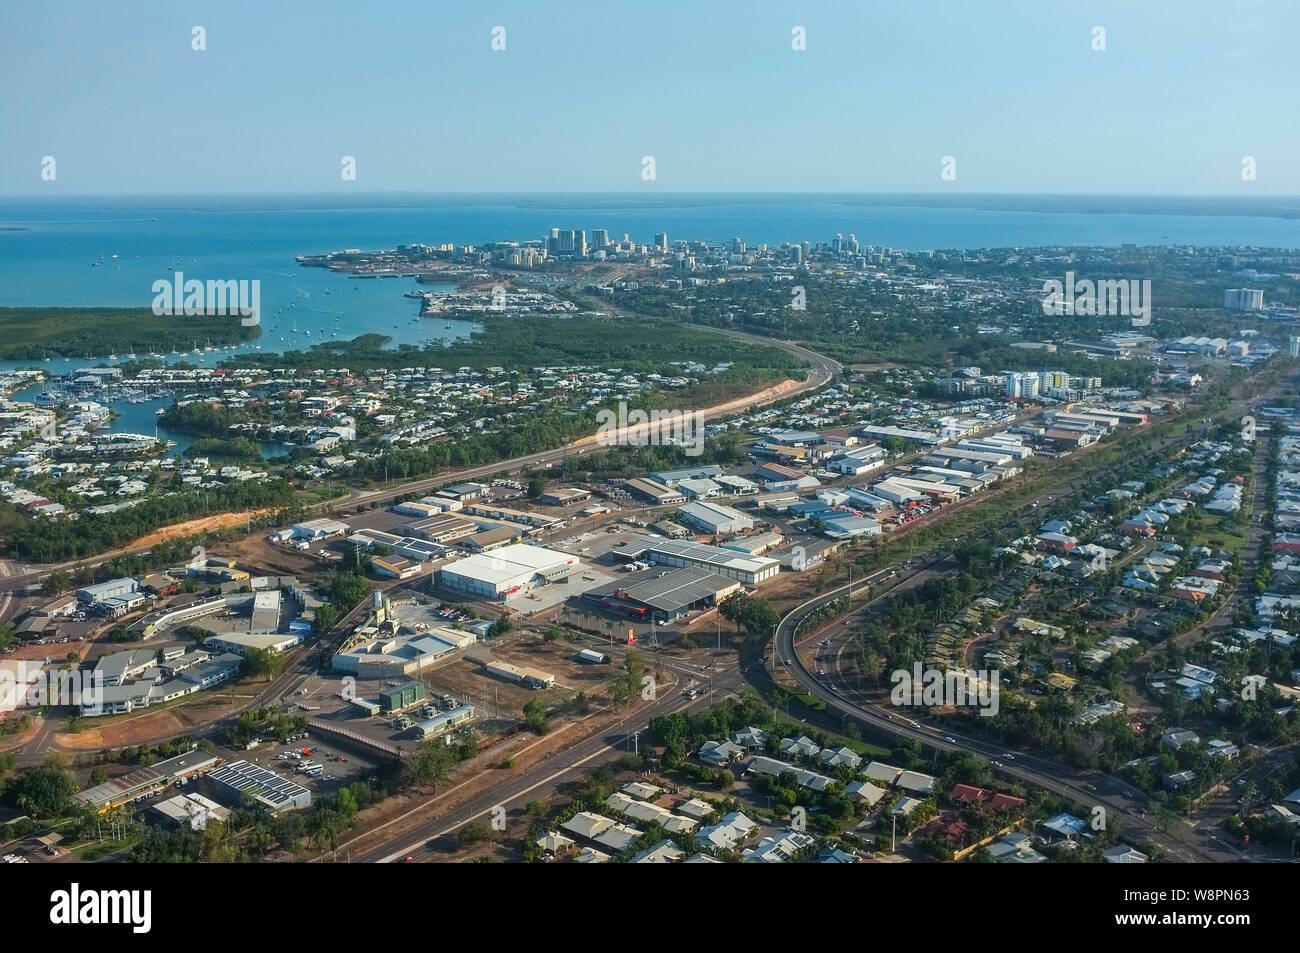 La ciudad de Darwin, capital del Territorio del Norte de Australia, vista desde el aire. Foto de stock